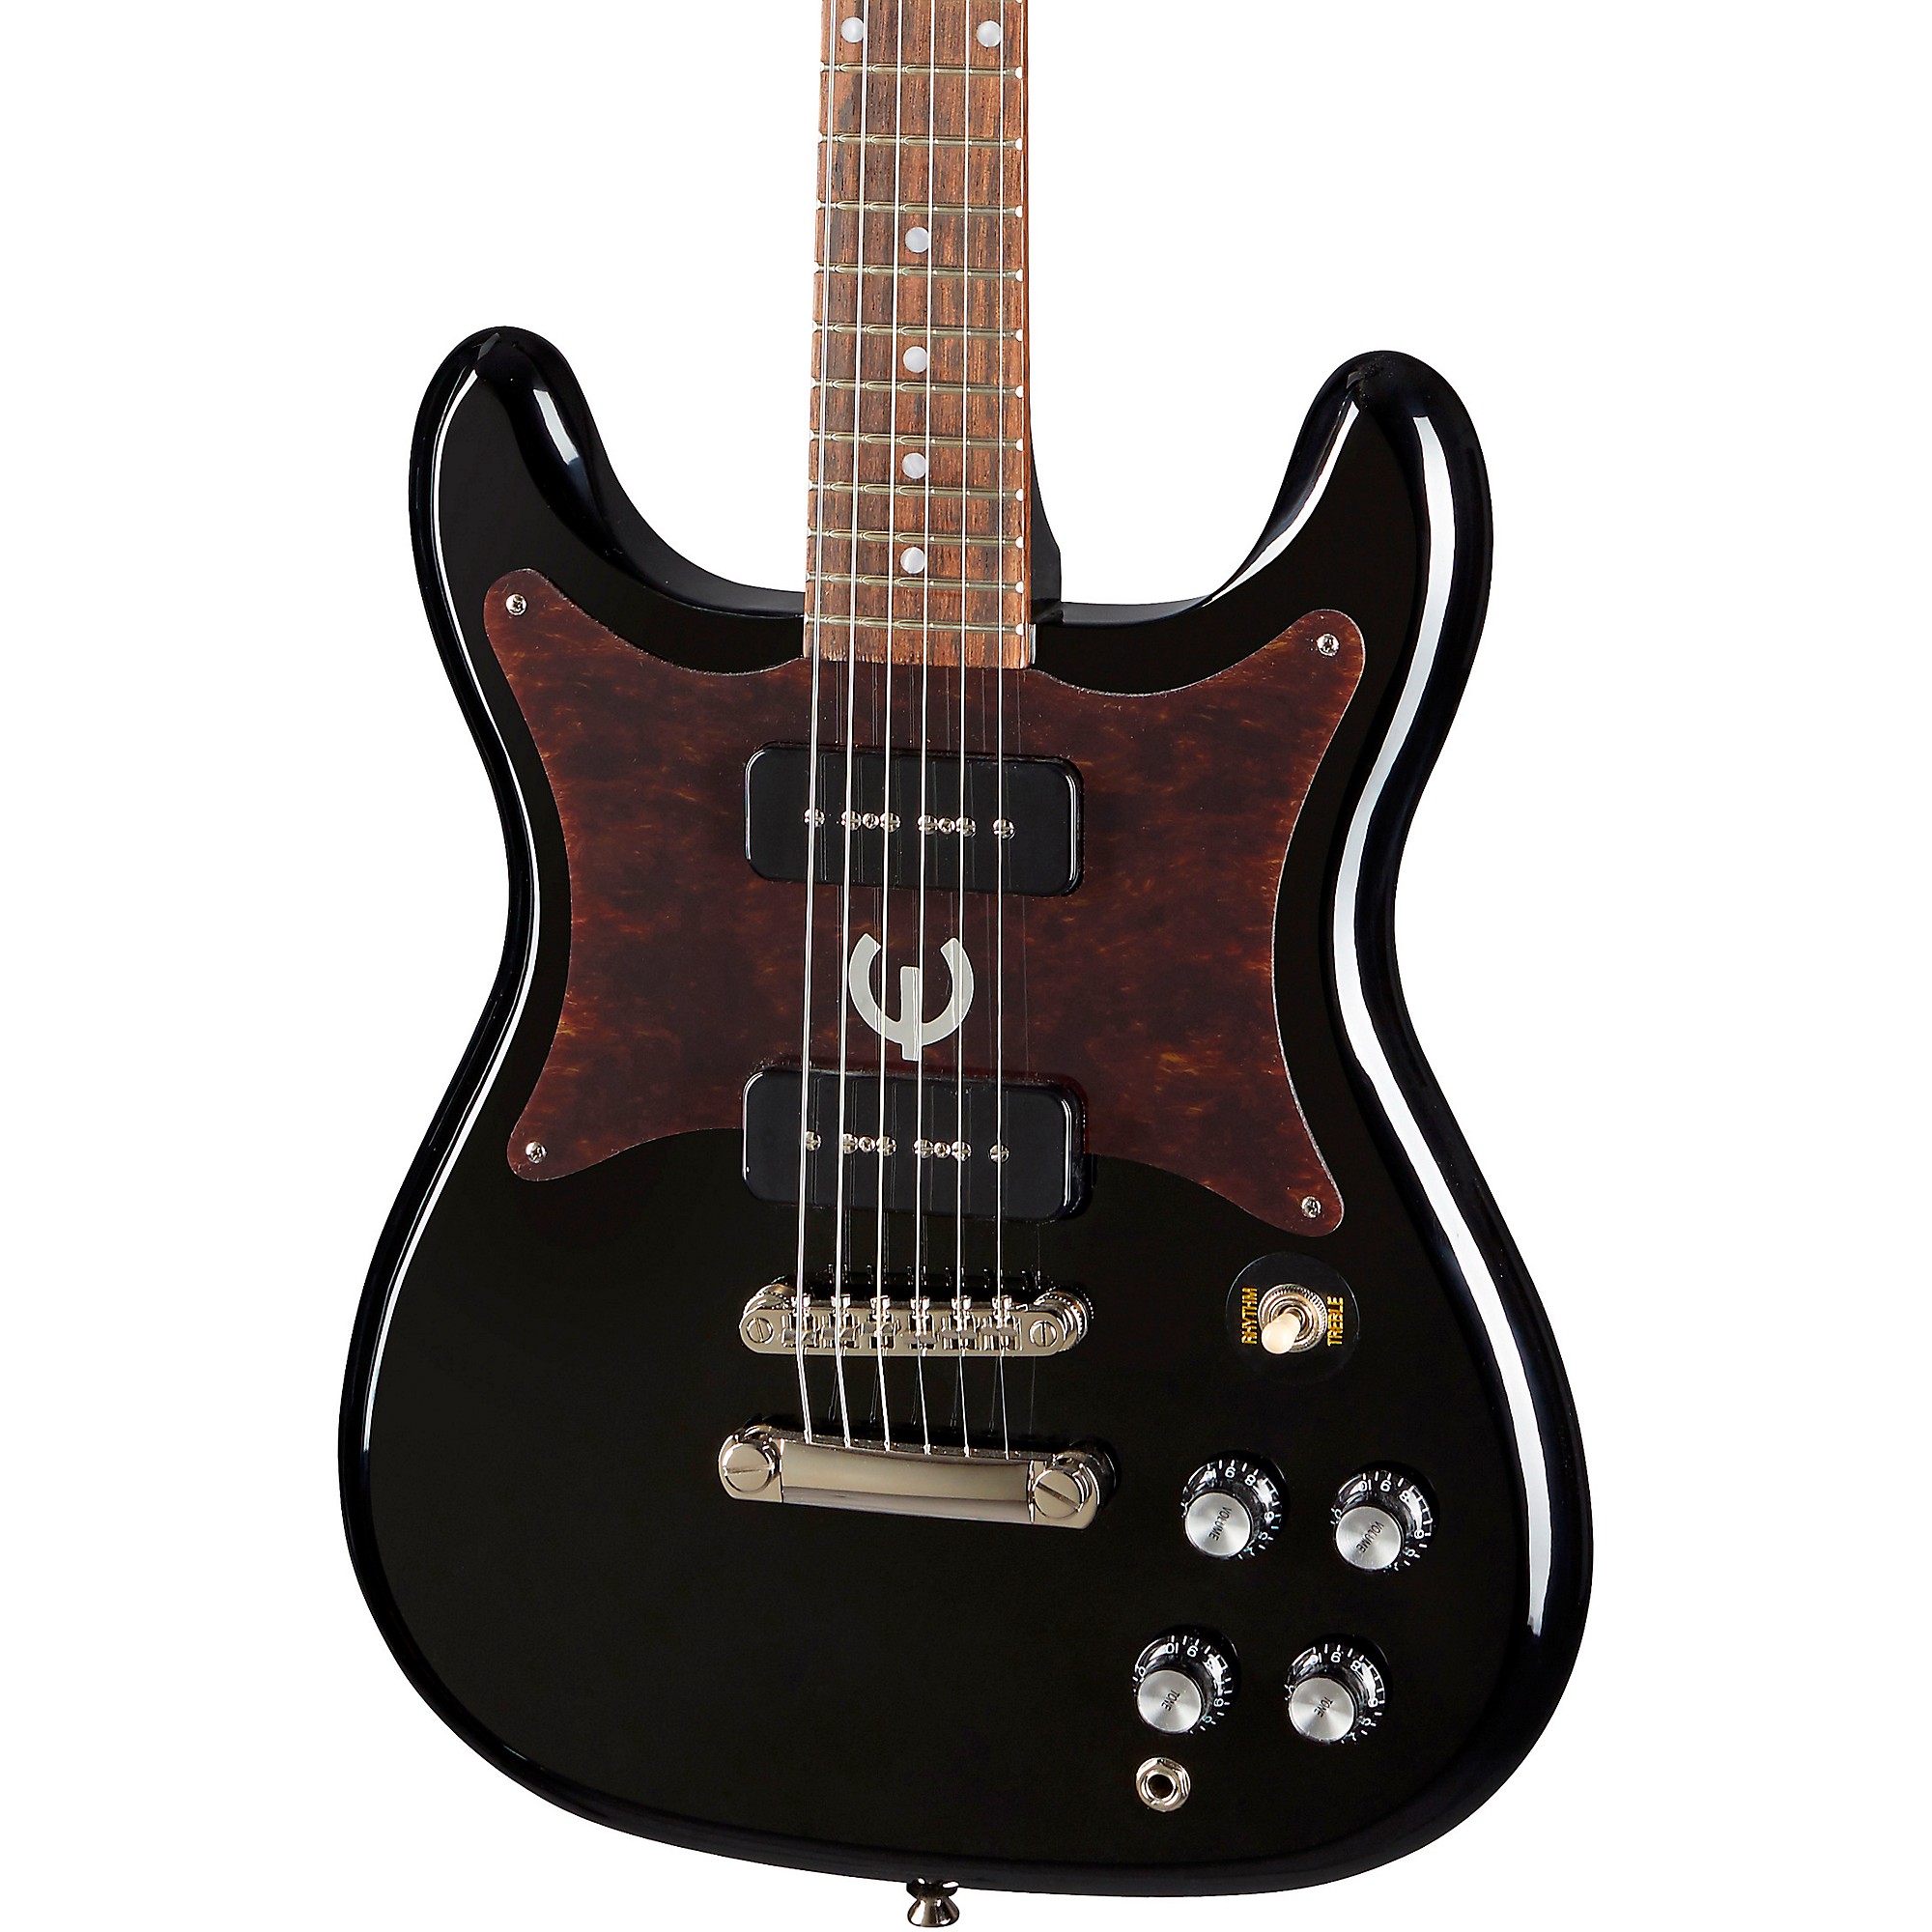 Электрогитара Epiphone Wilshire P-90 черного цвета электрогитара epiphone eowlebnh1 wilshire p 90 guitar laurel fretboard ebony